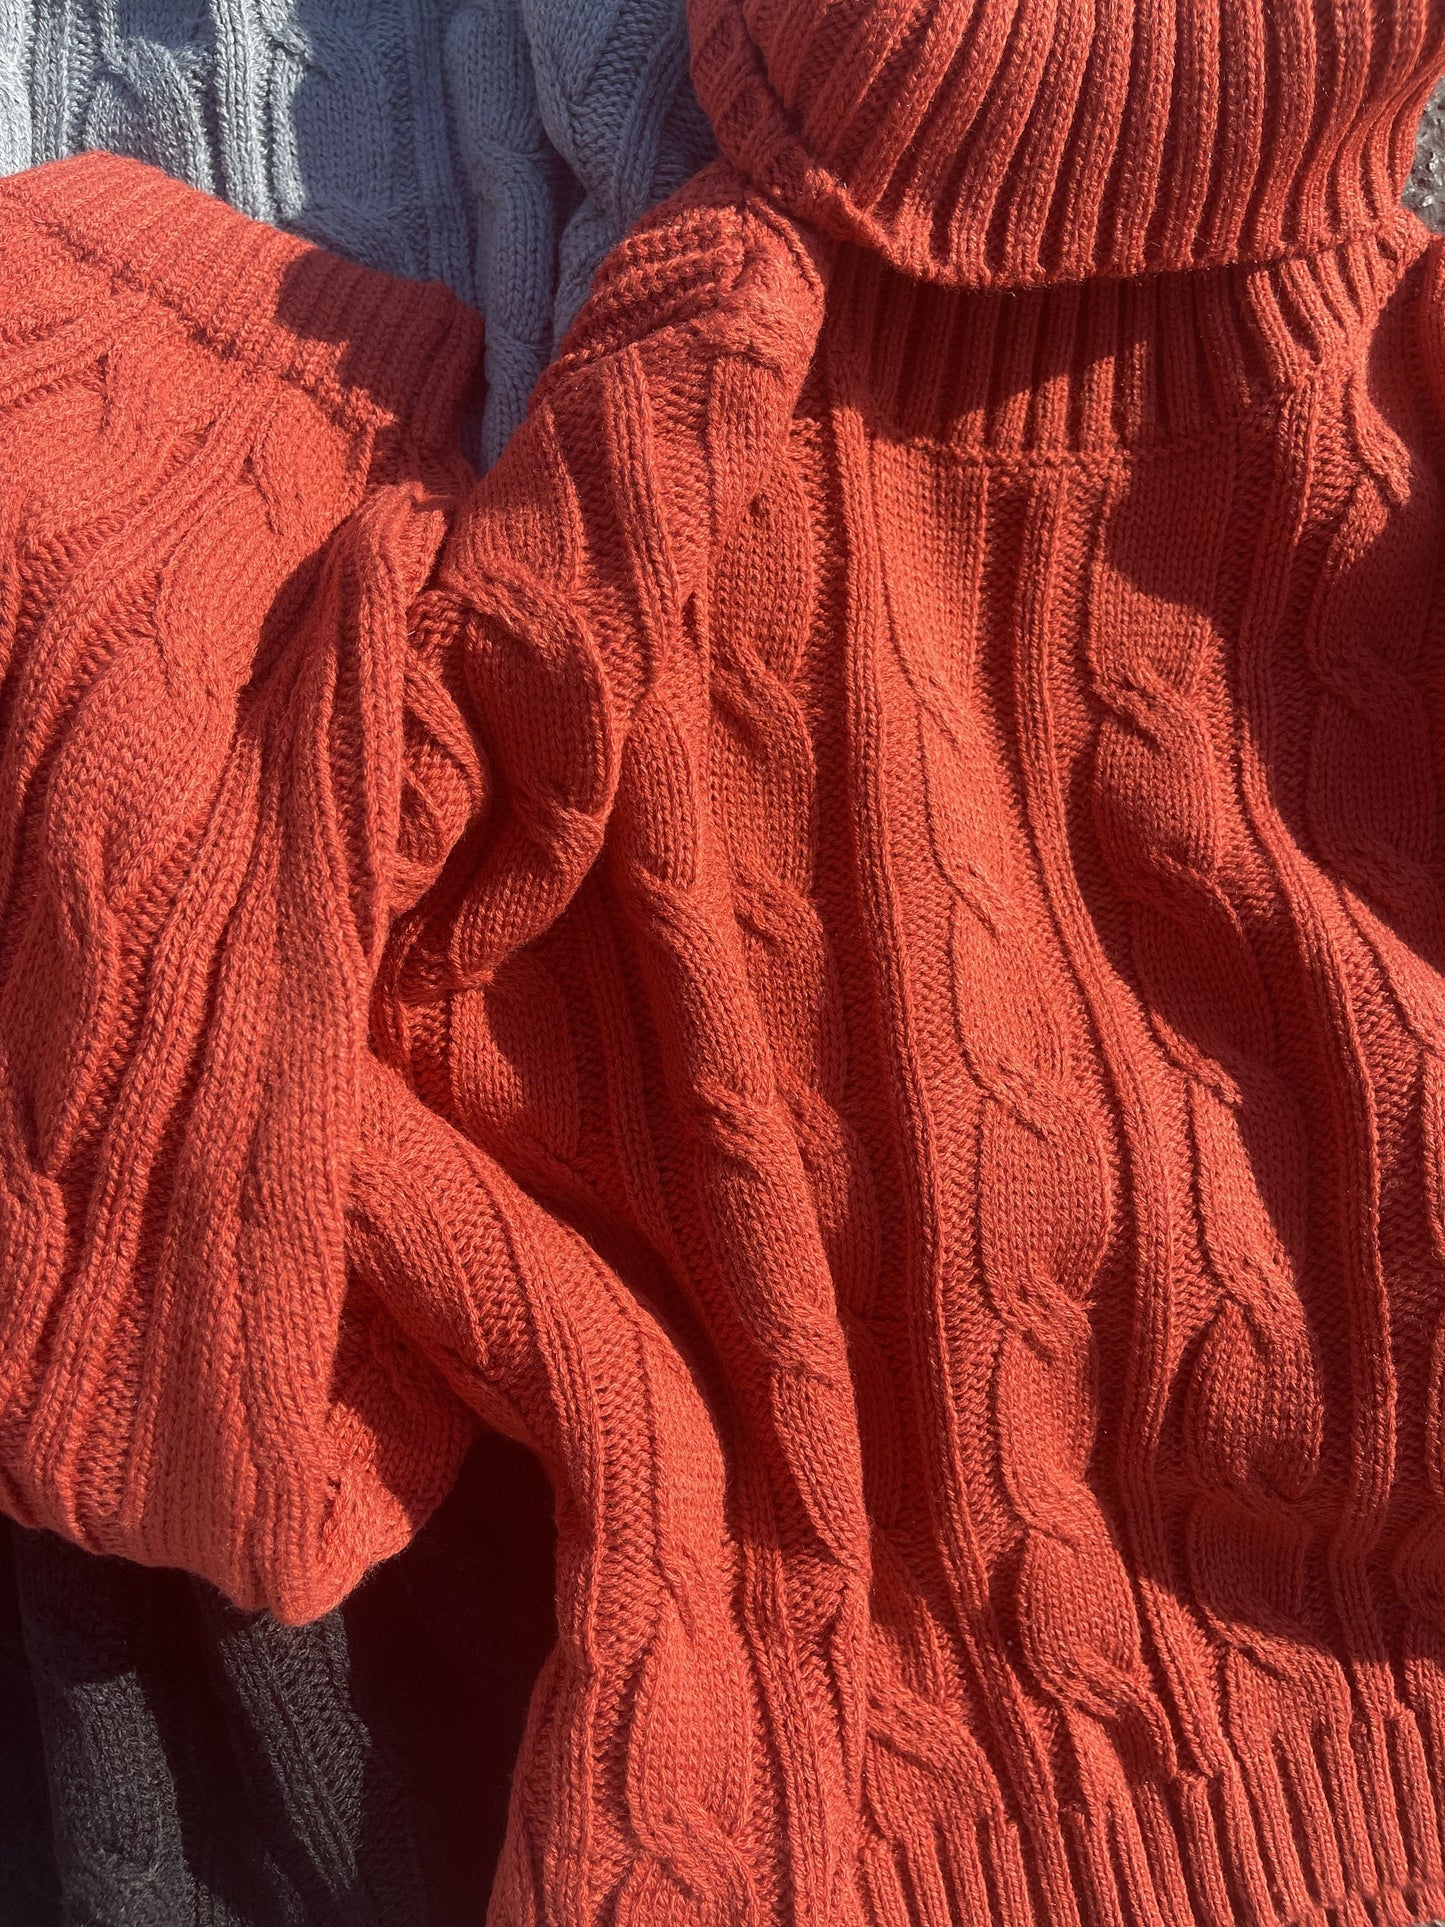 Snug knit sweater (terra)